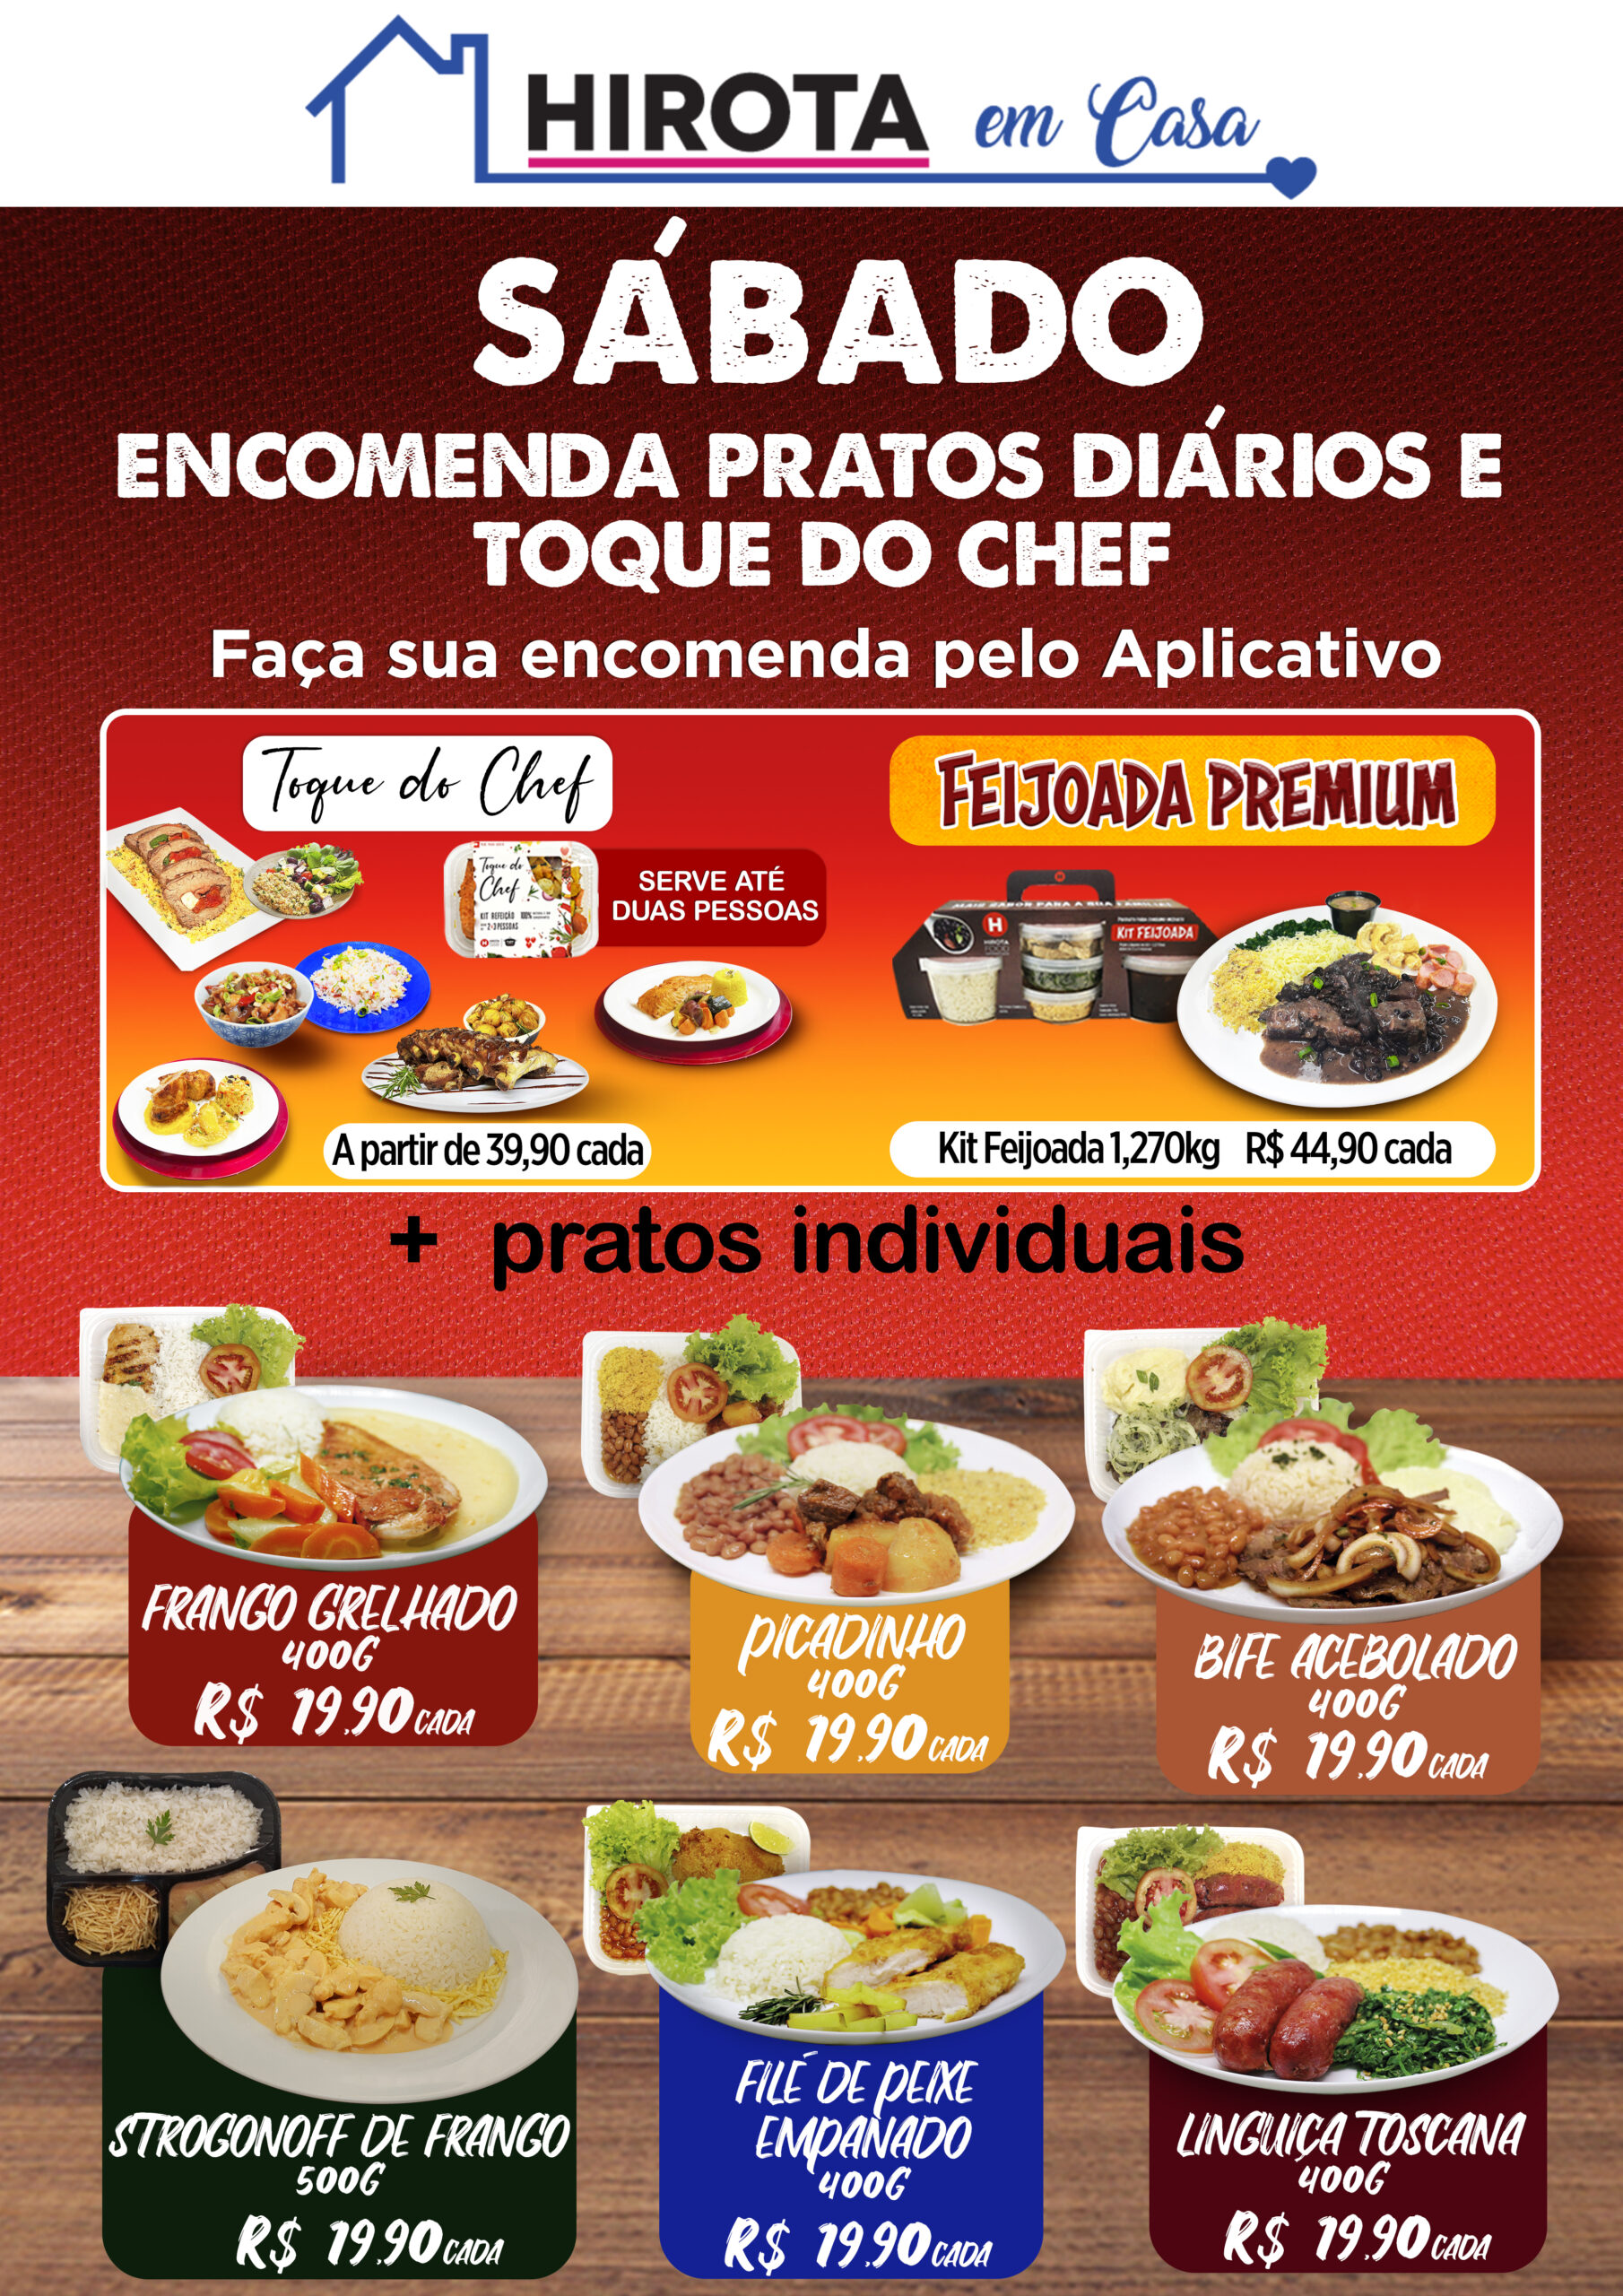 7-S-Encomenda_prato_e_kit_do_dia_sabado-scaled Hirota em Casa: encomende seu prato no app!